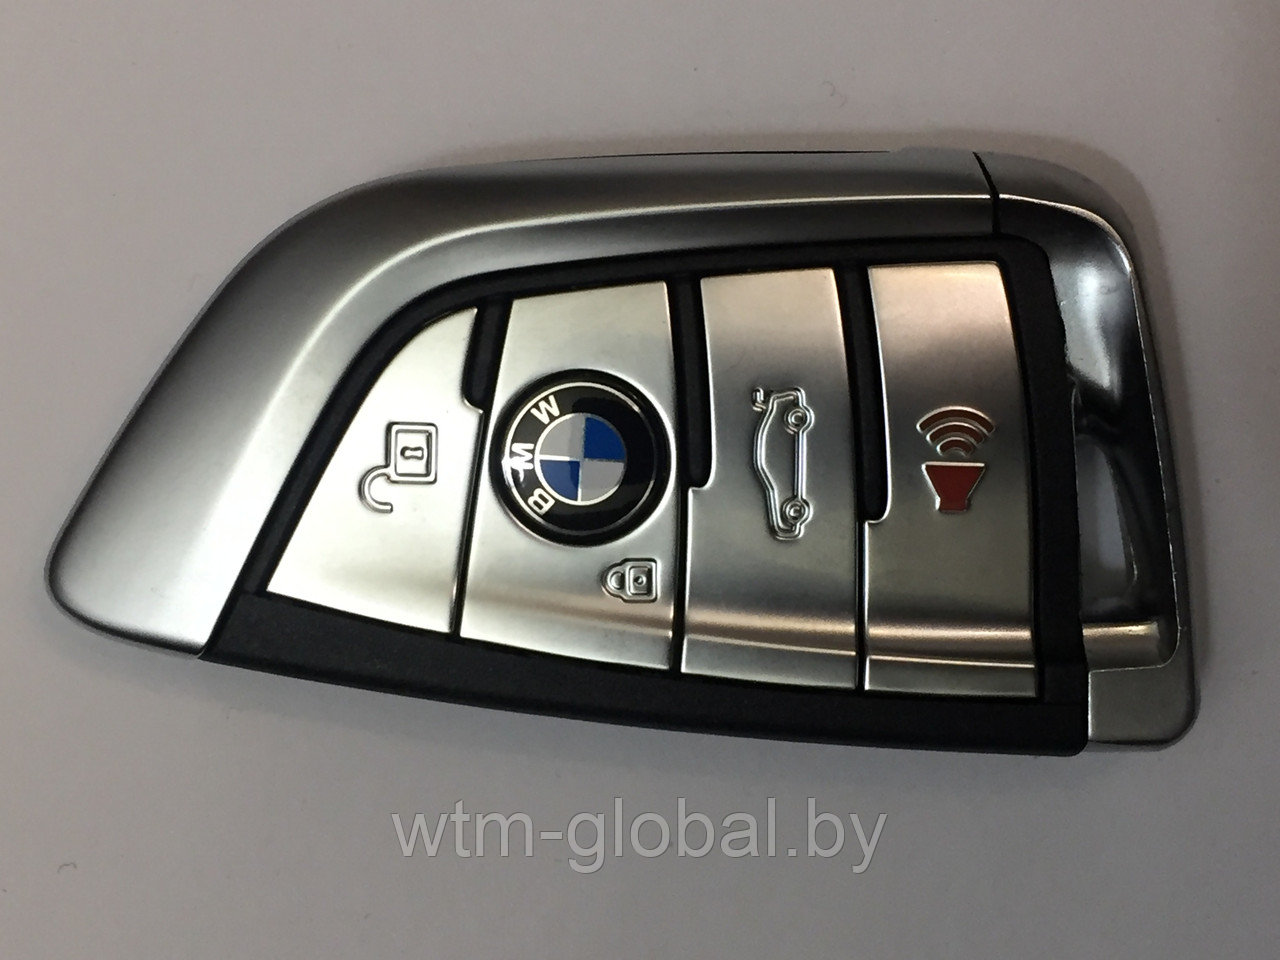 Смарт ключ для 2015-2018 BMW X5